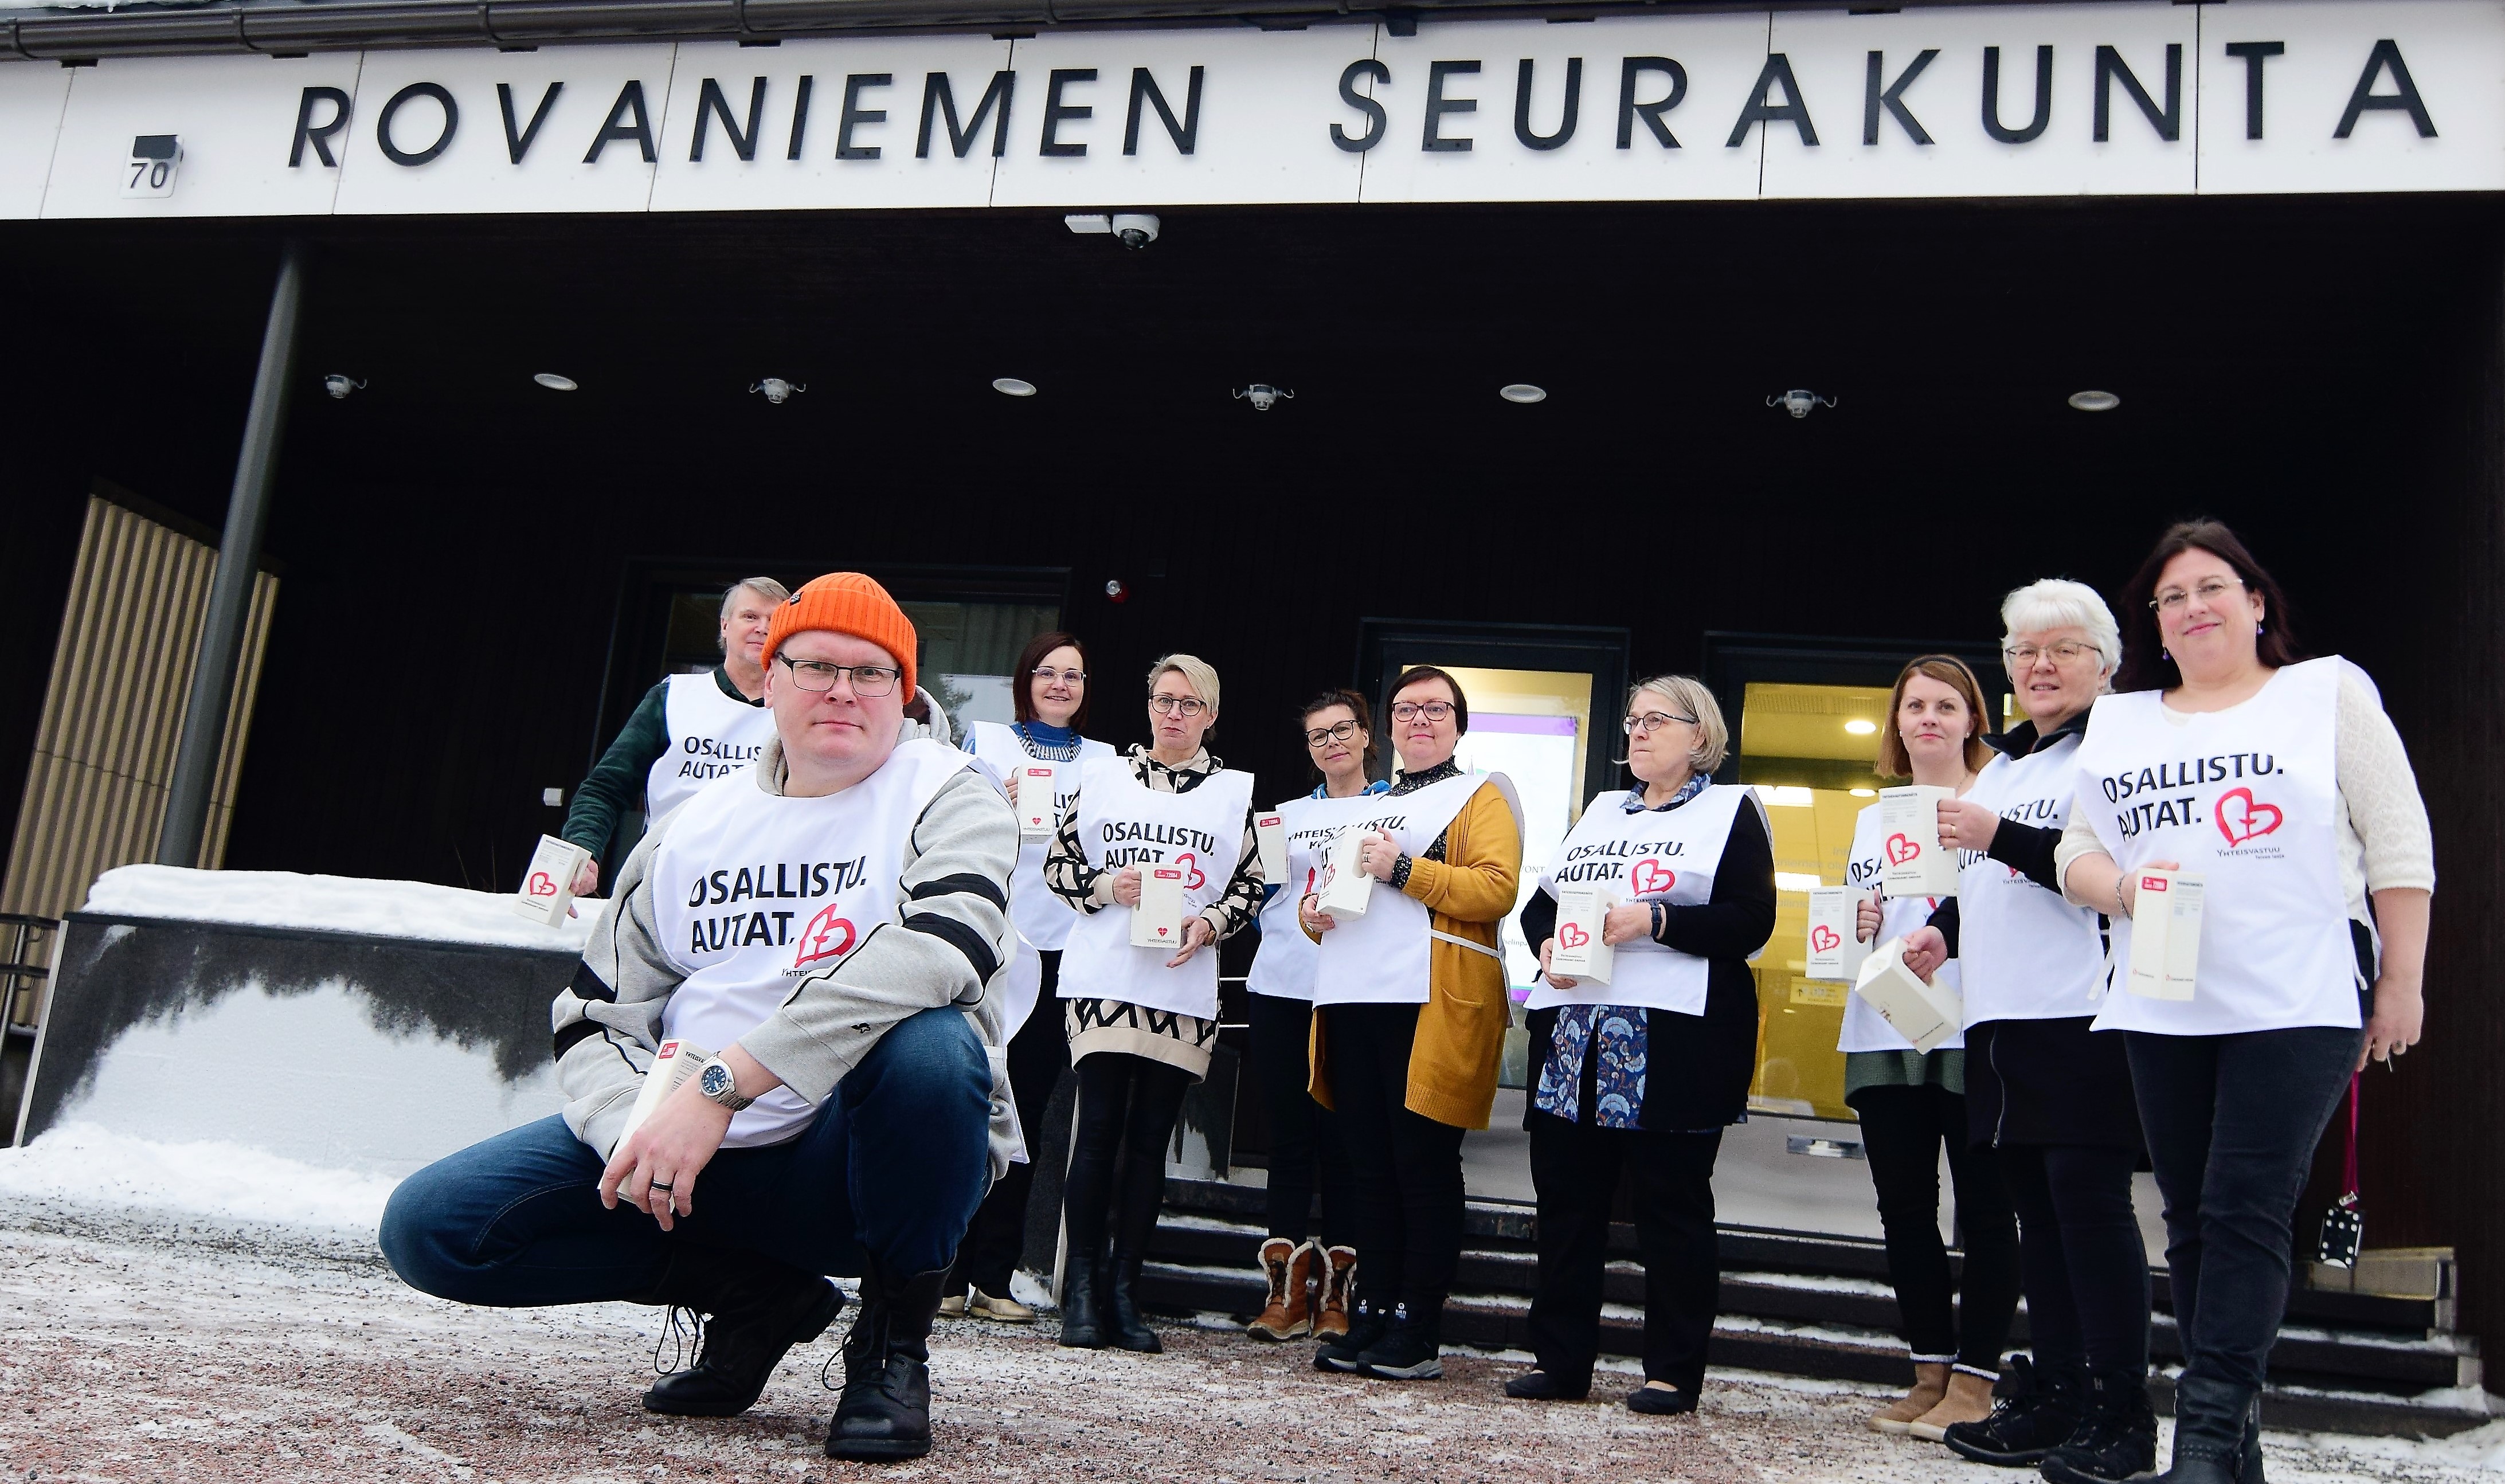 Rovaniemen seurakunnan työntekijöitä seurakuntakeskuksen edustalla valmiina Yhteisvastuukeräykseen.